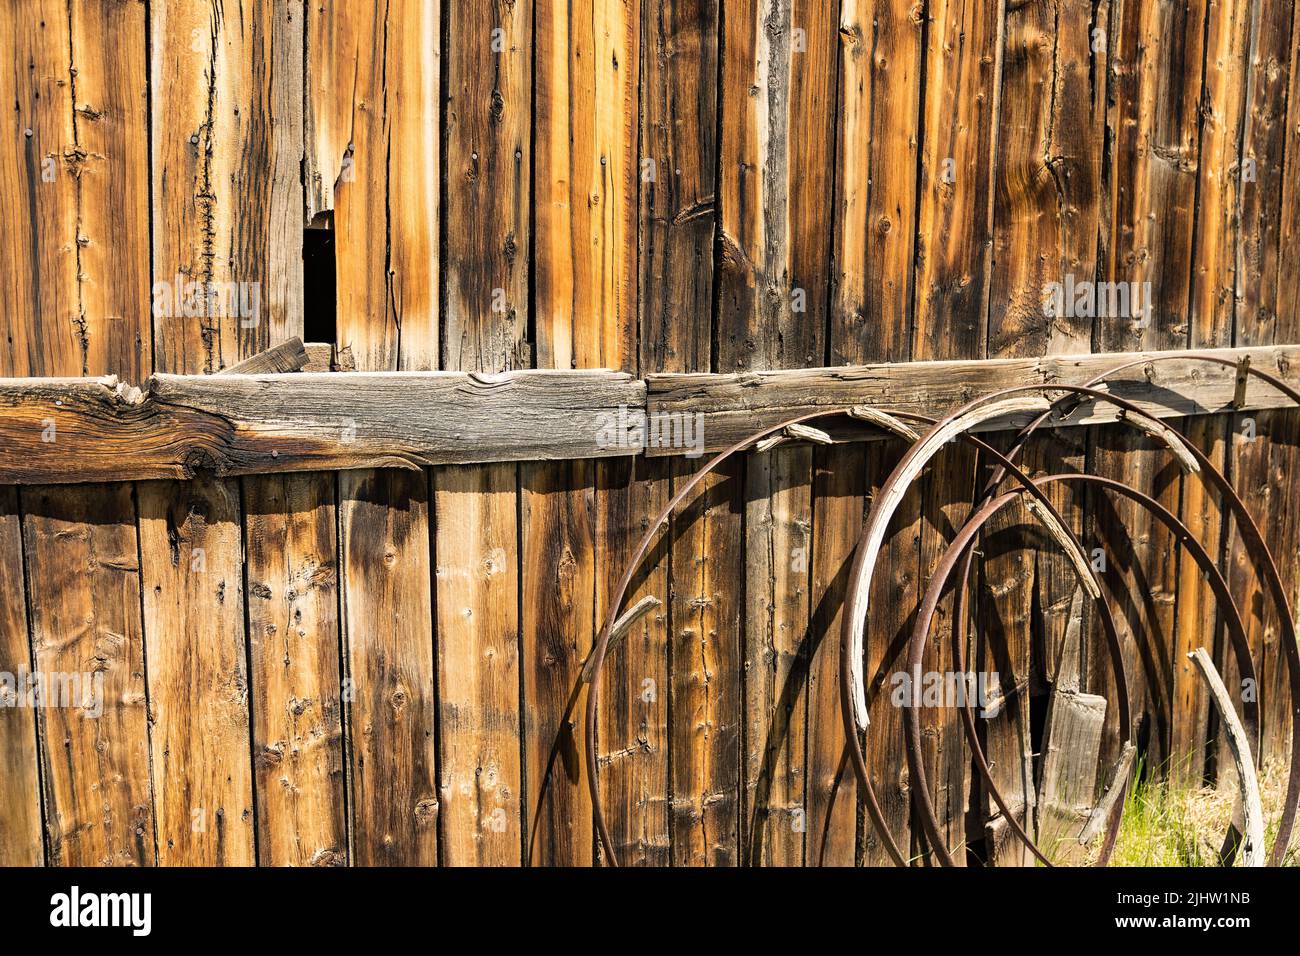 Hintergrund von alten verrosteten Wagenrädern vor einer verwitterten Holzscheune Stockfoto